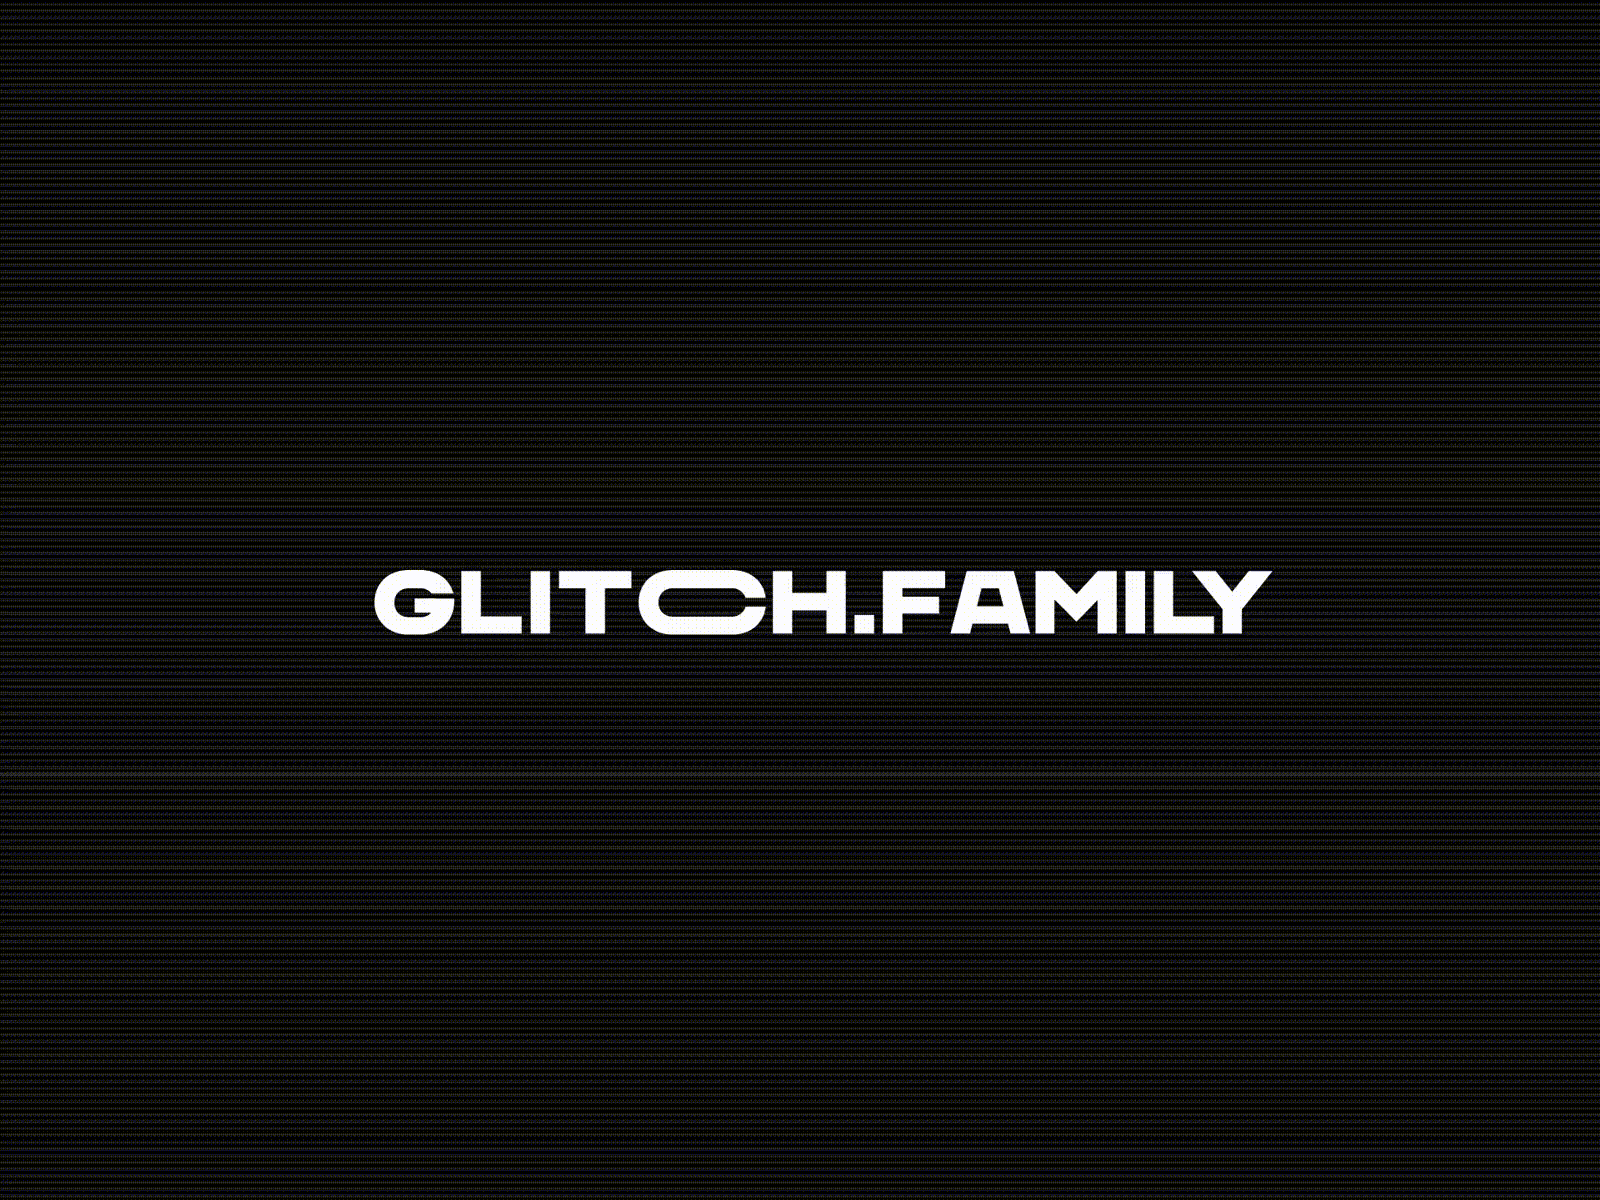 Glitch.Family Animated Logo glitch logo